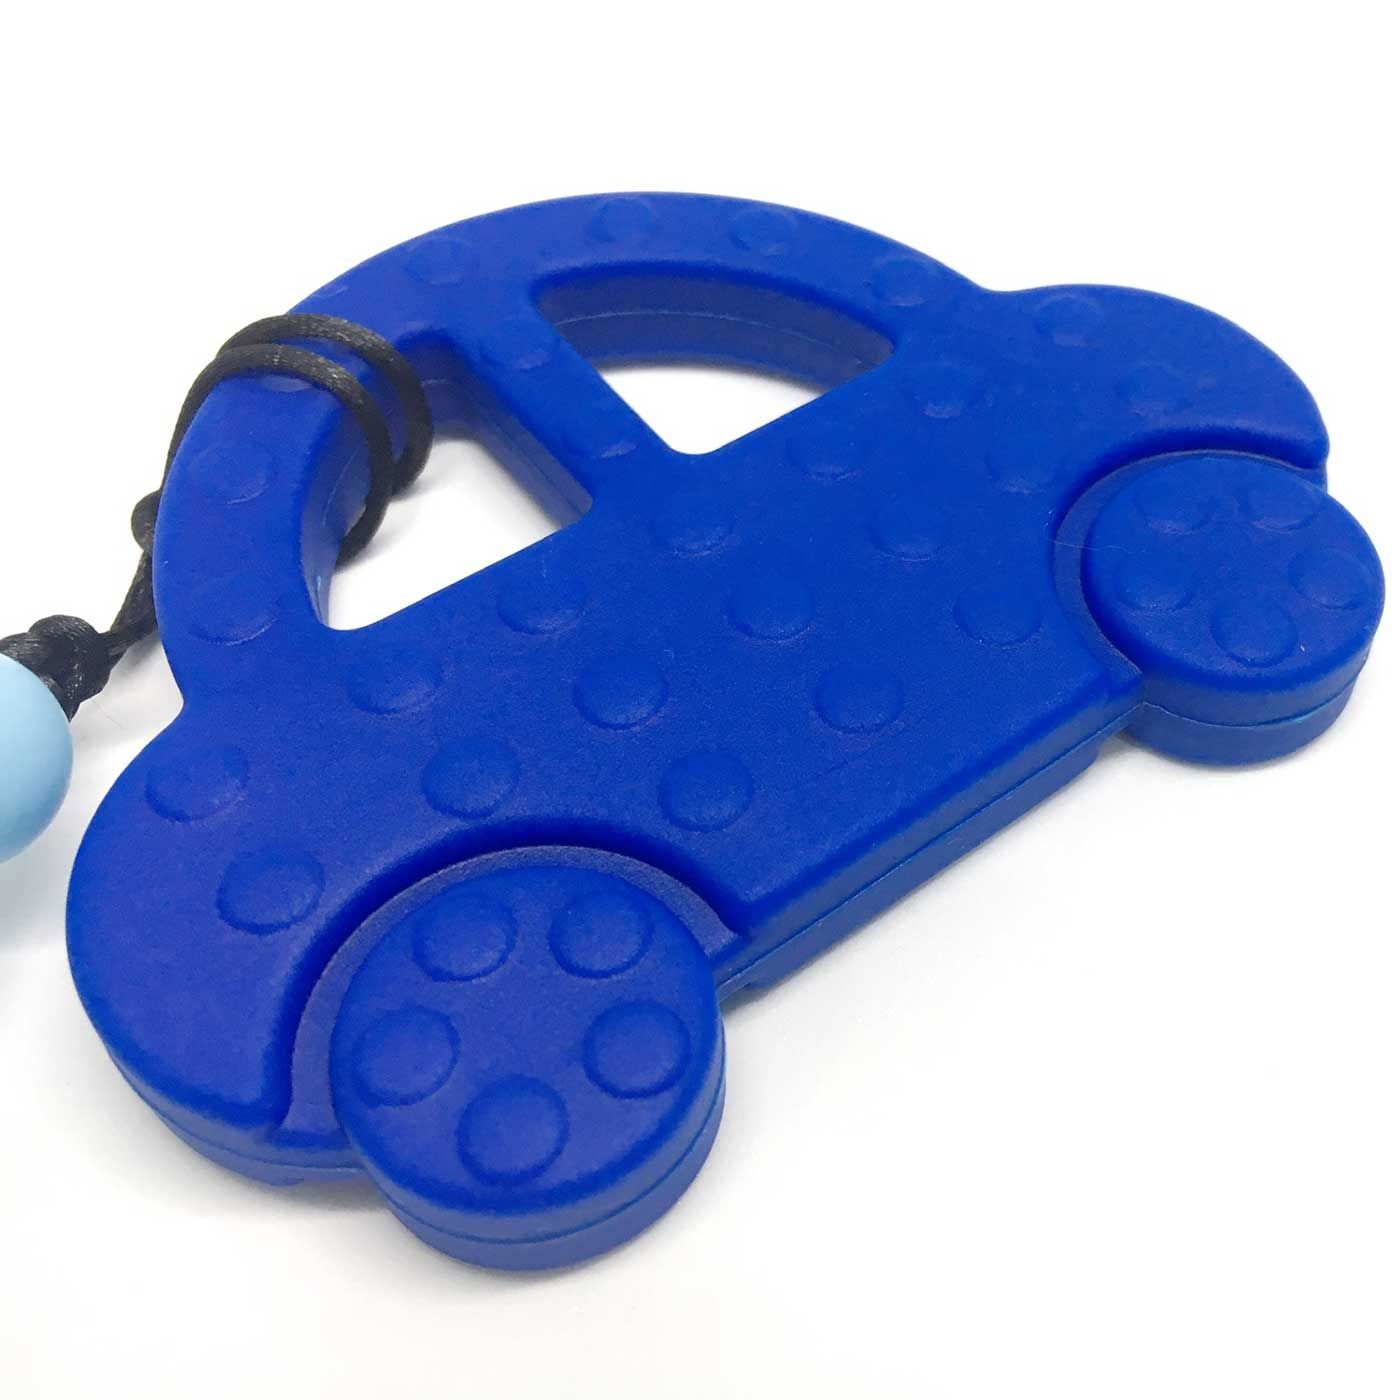 Brightchewelry Blue Car Teether - 2